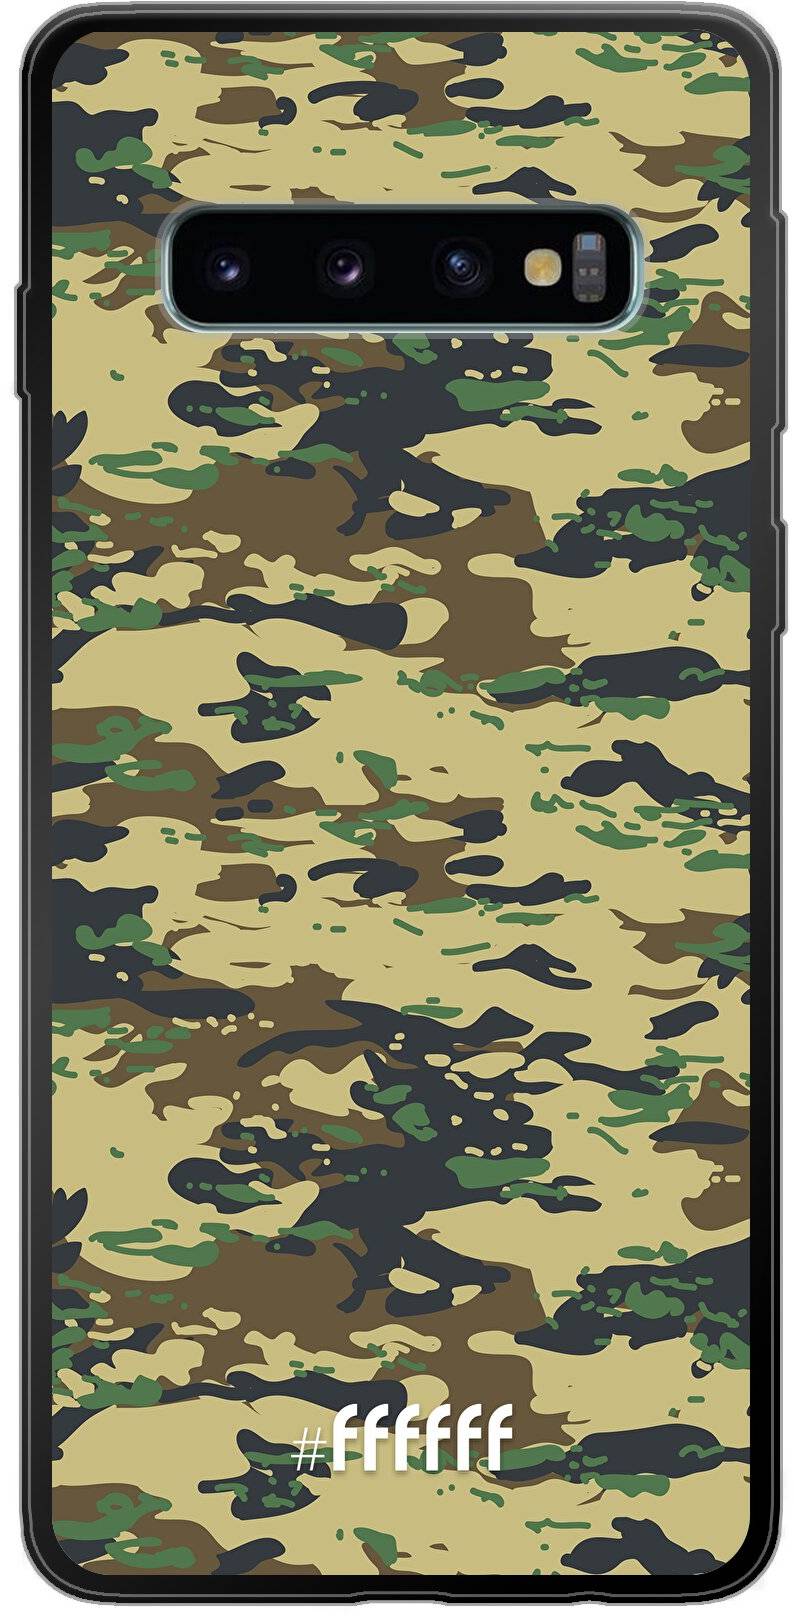 Desert Camouflage Galaxy S10